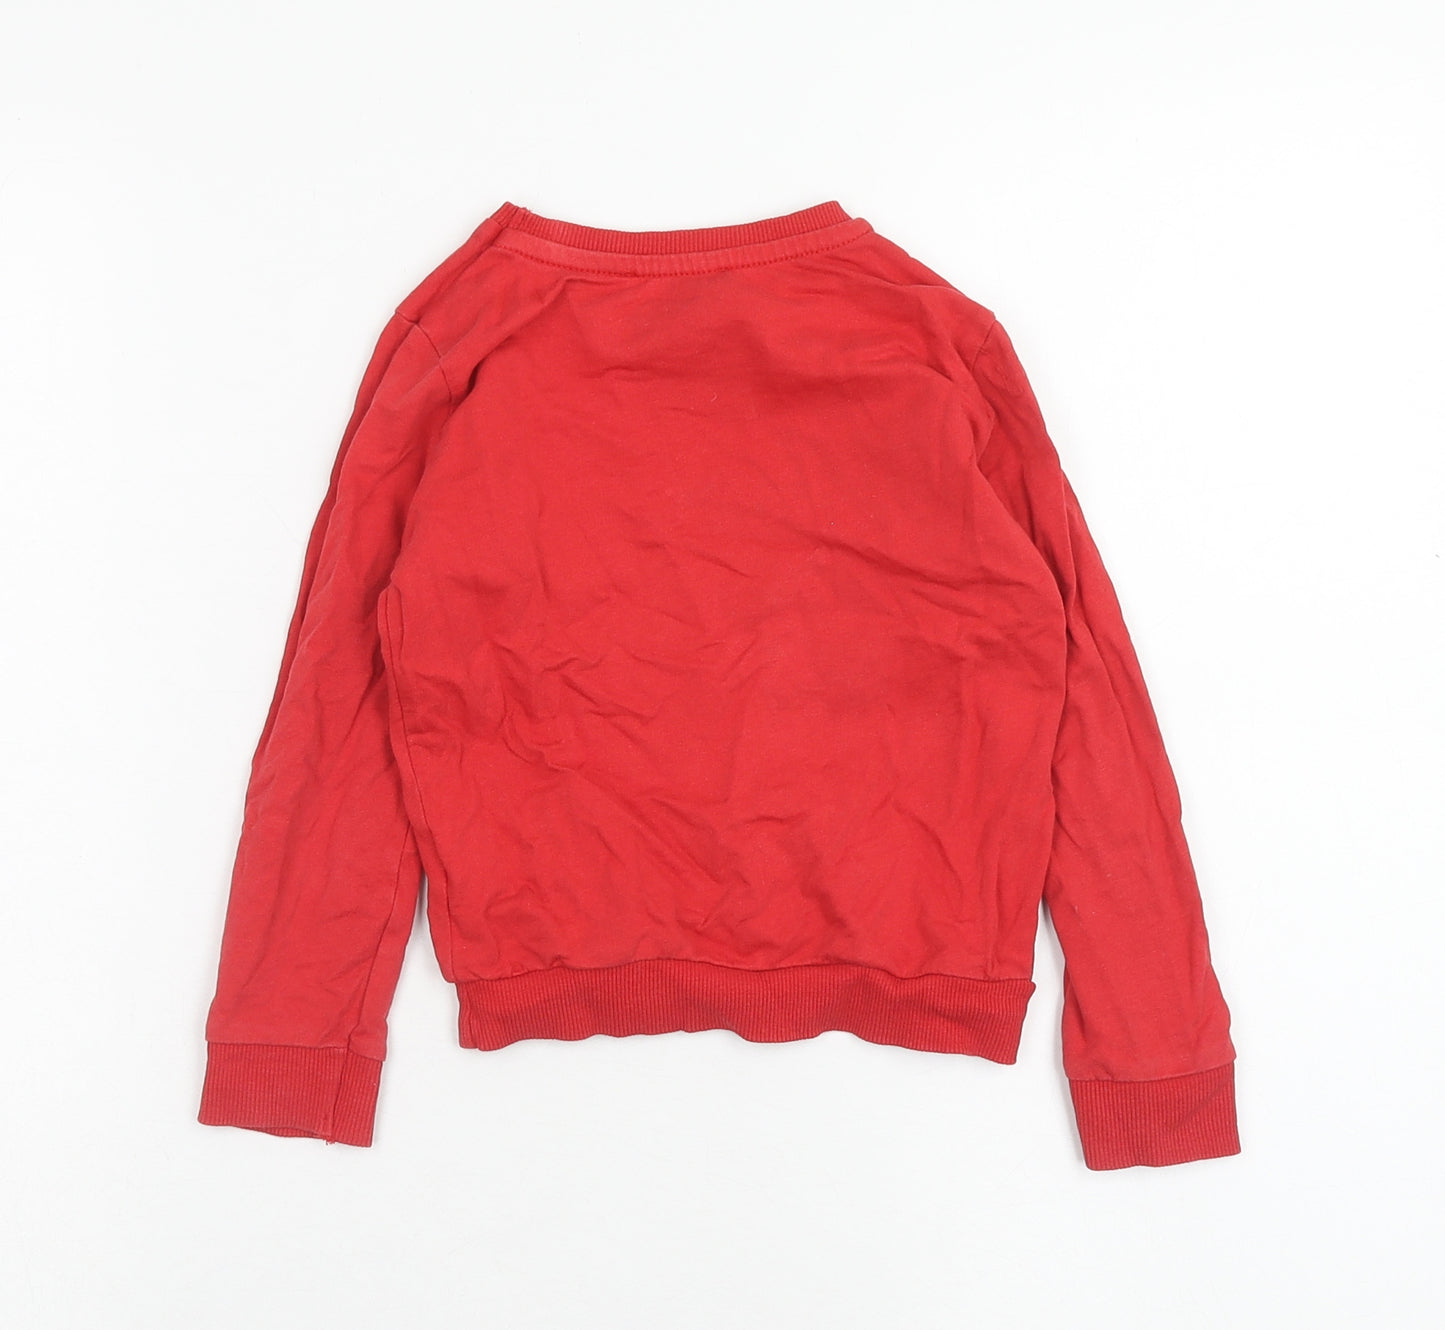 Primark Girls Red Cotton Pullover Sweatshirt Size 3 Years Pullover - Team Rudolph